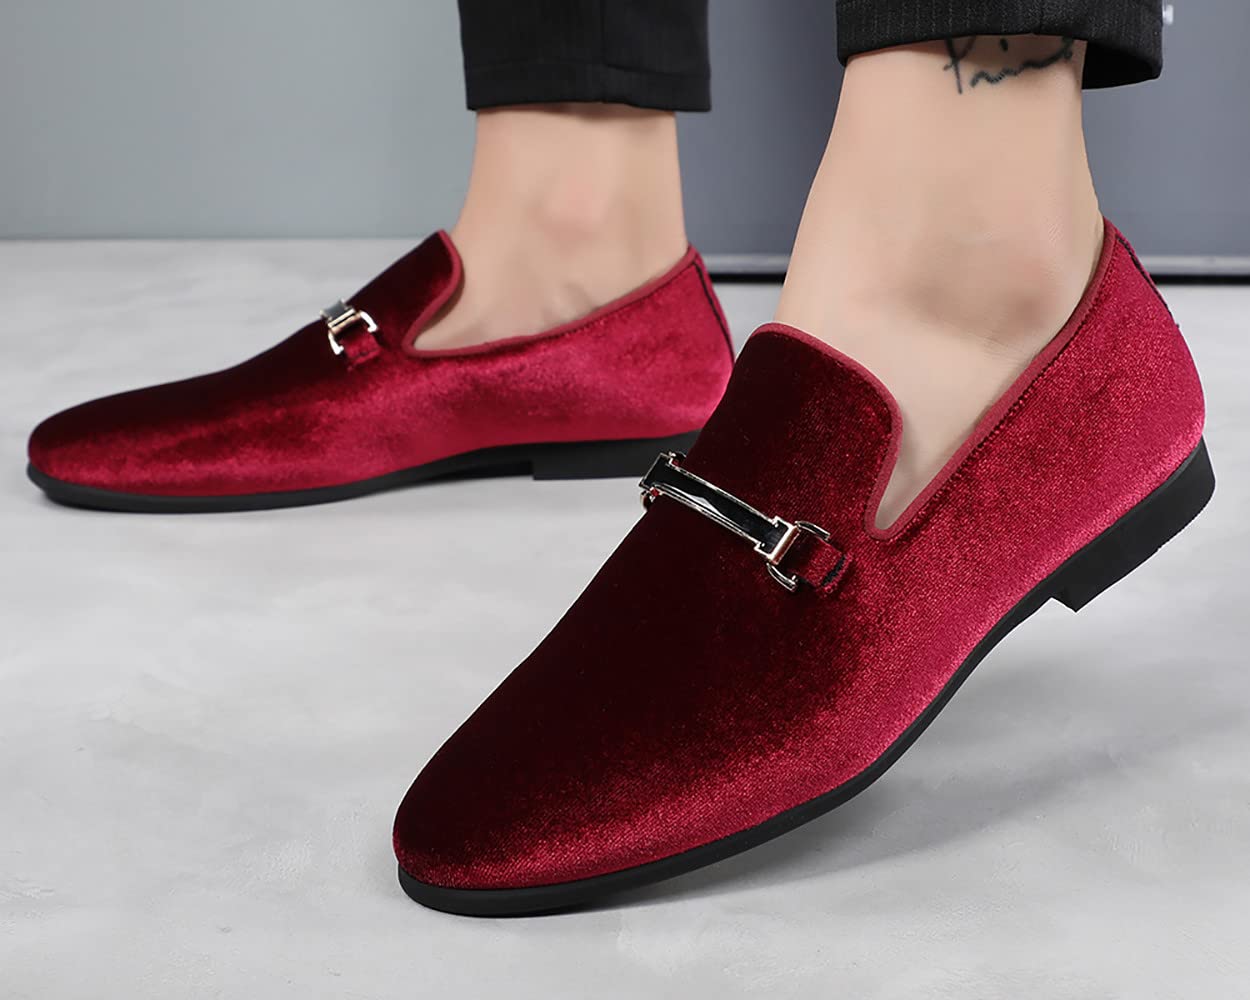 Santimon Dress Loafers Velvet Horsebit Buckle Flat Driving Moccasin Shoes for Men